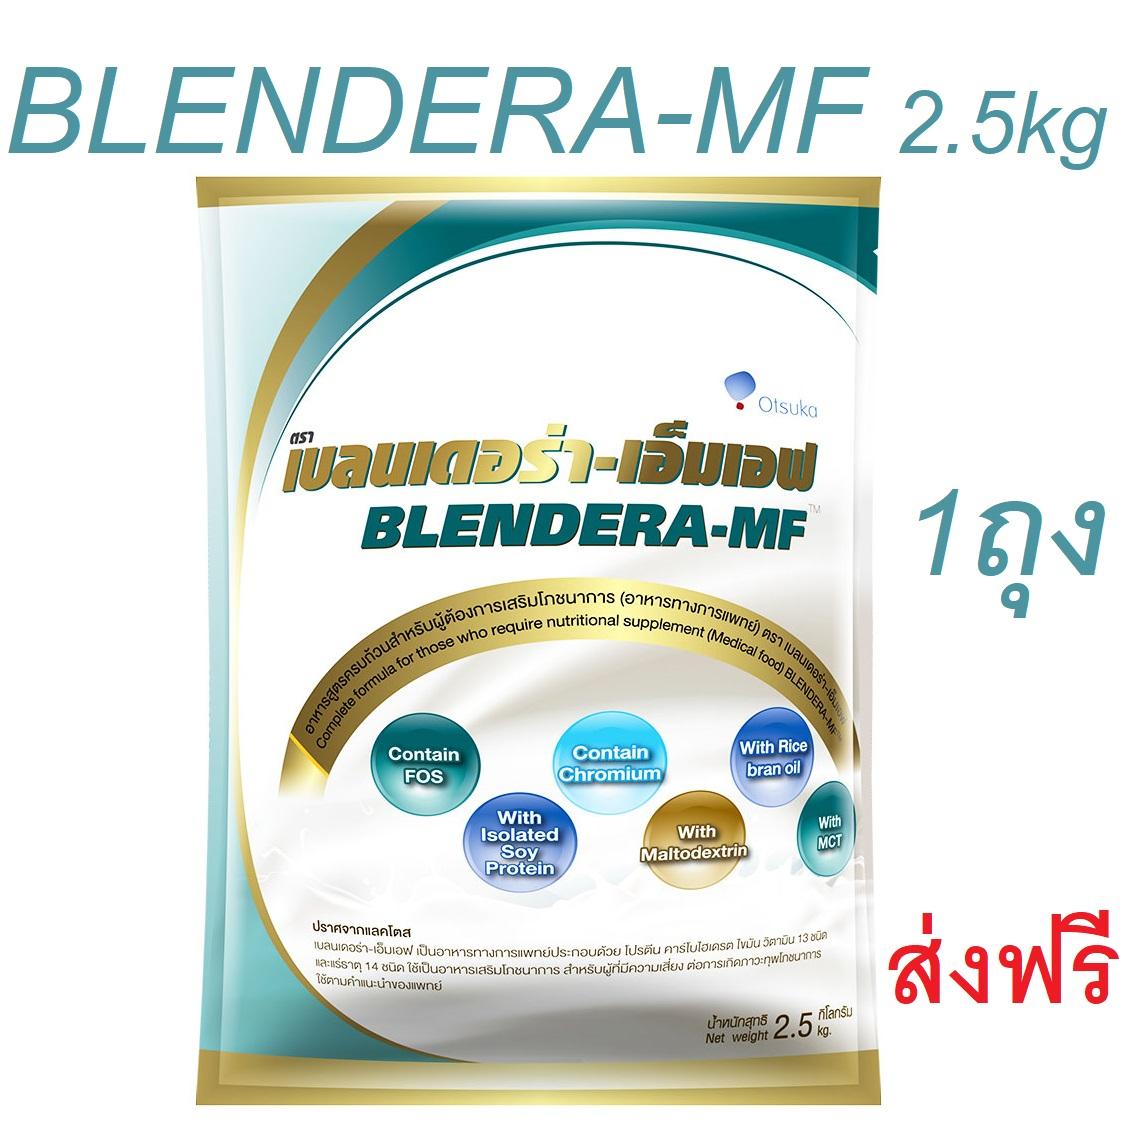 Blendera-MF 2.5kg เบลนเดอร่า-เอ็มเอฟ 2.5 กิโลกรัม 1 ถุง Blendera เอ็มเอฟ